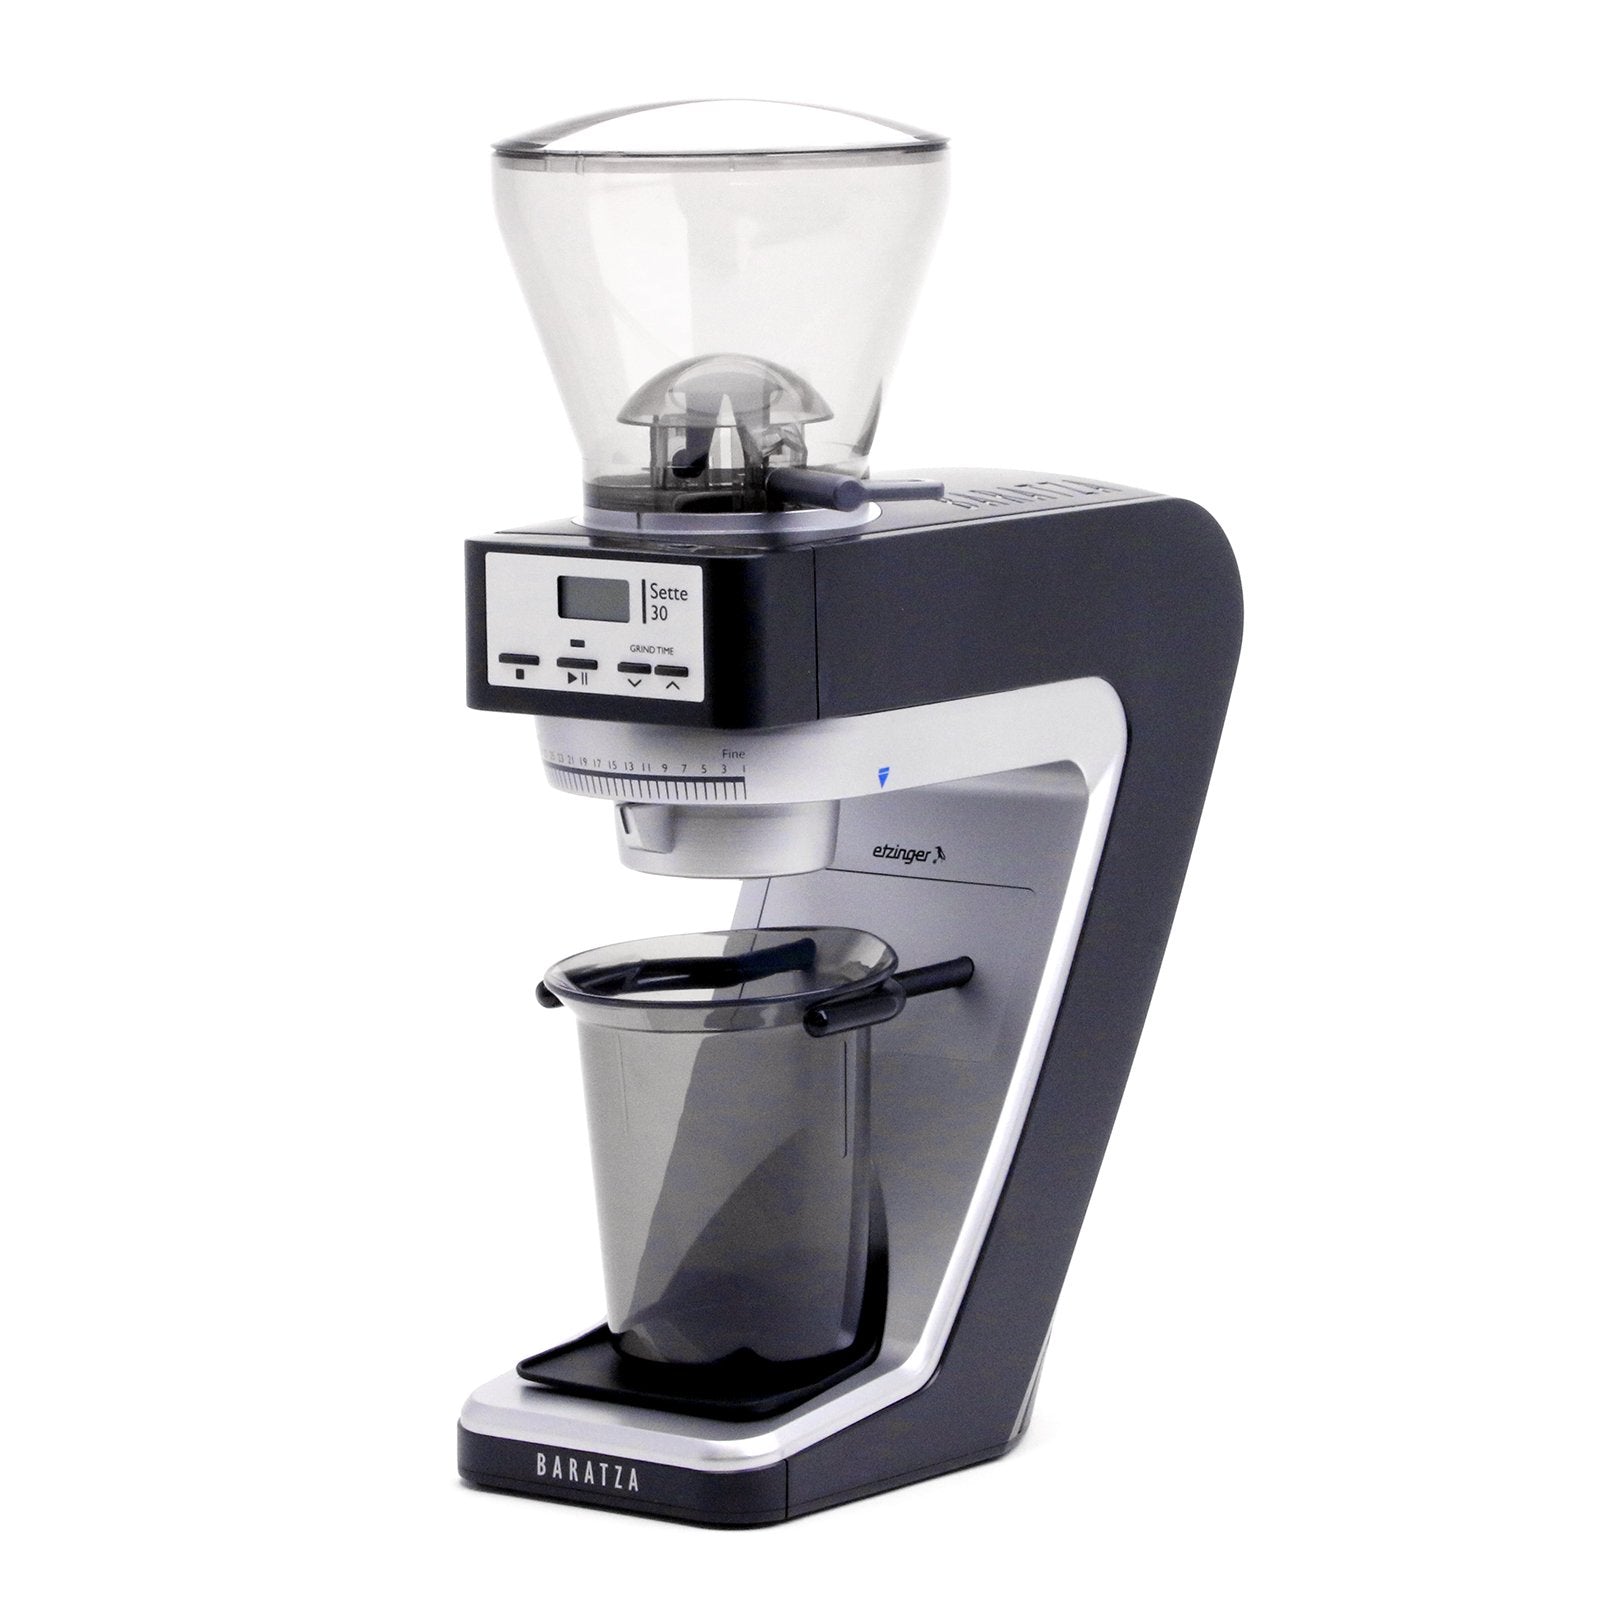 30-Piece Coffee & Espresso Machine Set